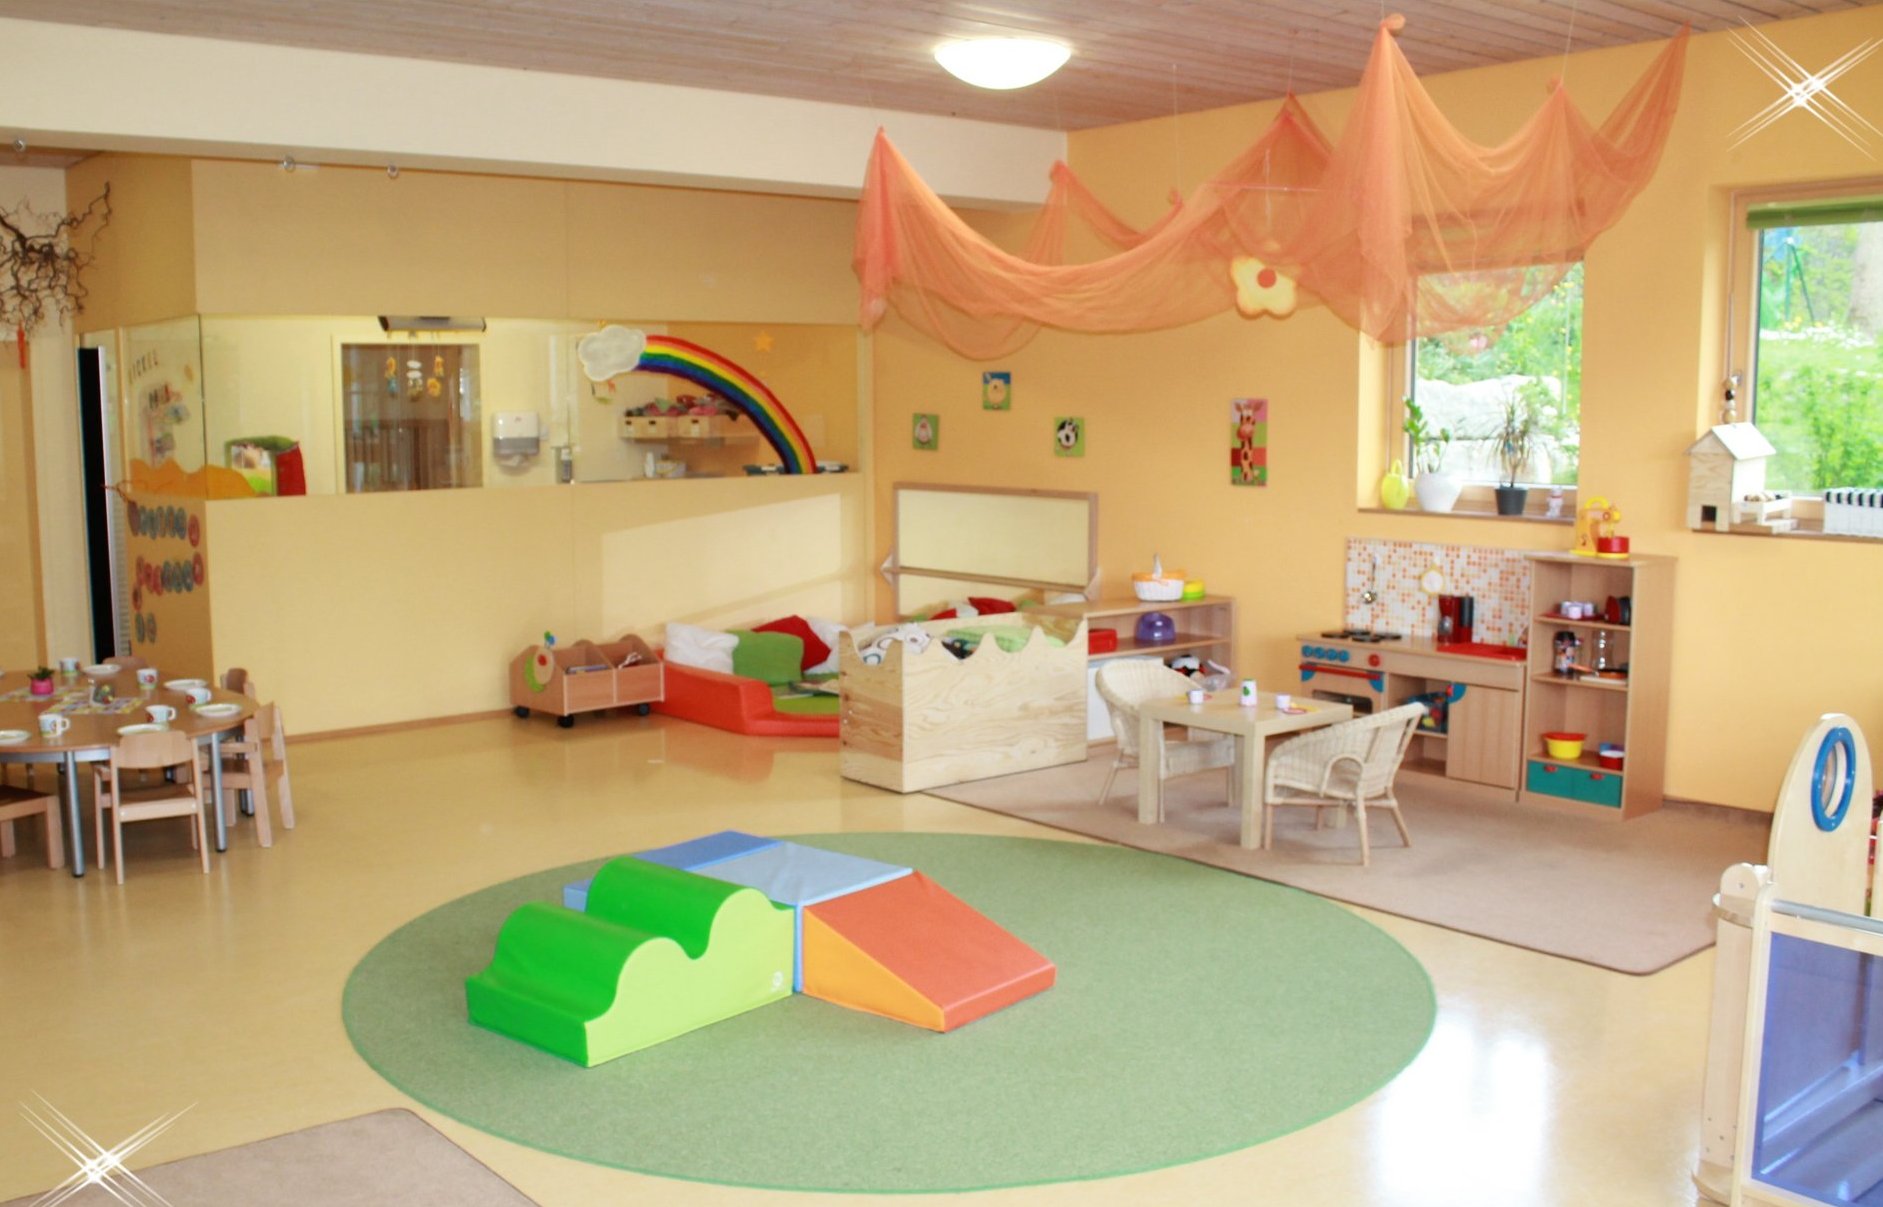 Kindergarten Innenraum mit Spielzeugen an den Wänden und auf dem Boden. Auf dem Bild sind keine Kinder zu sehen.